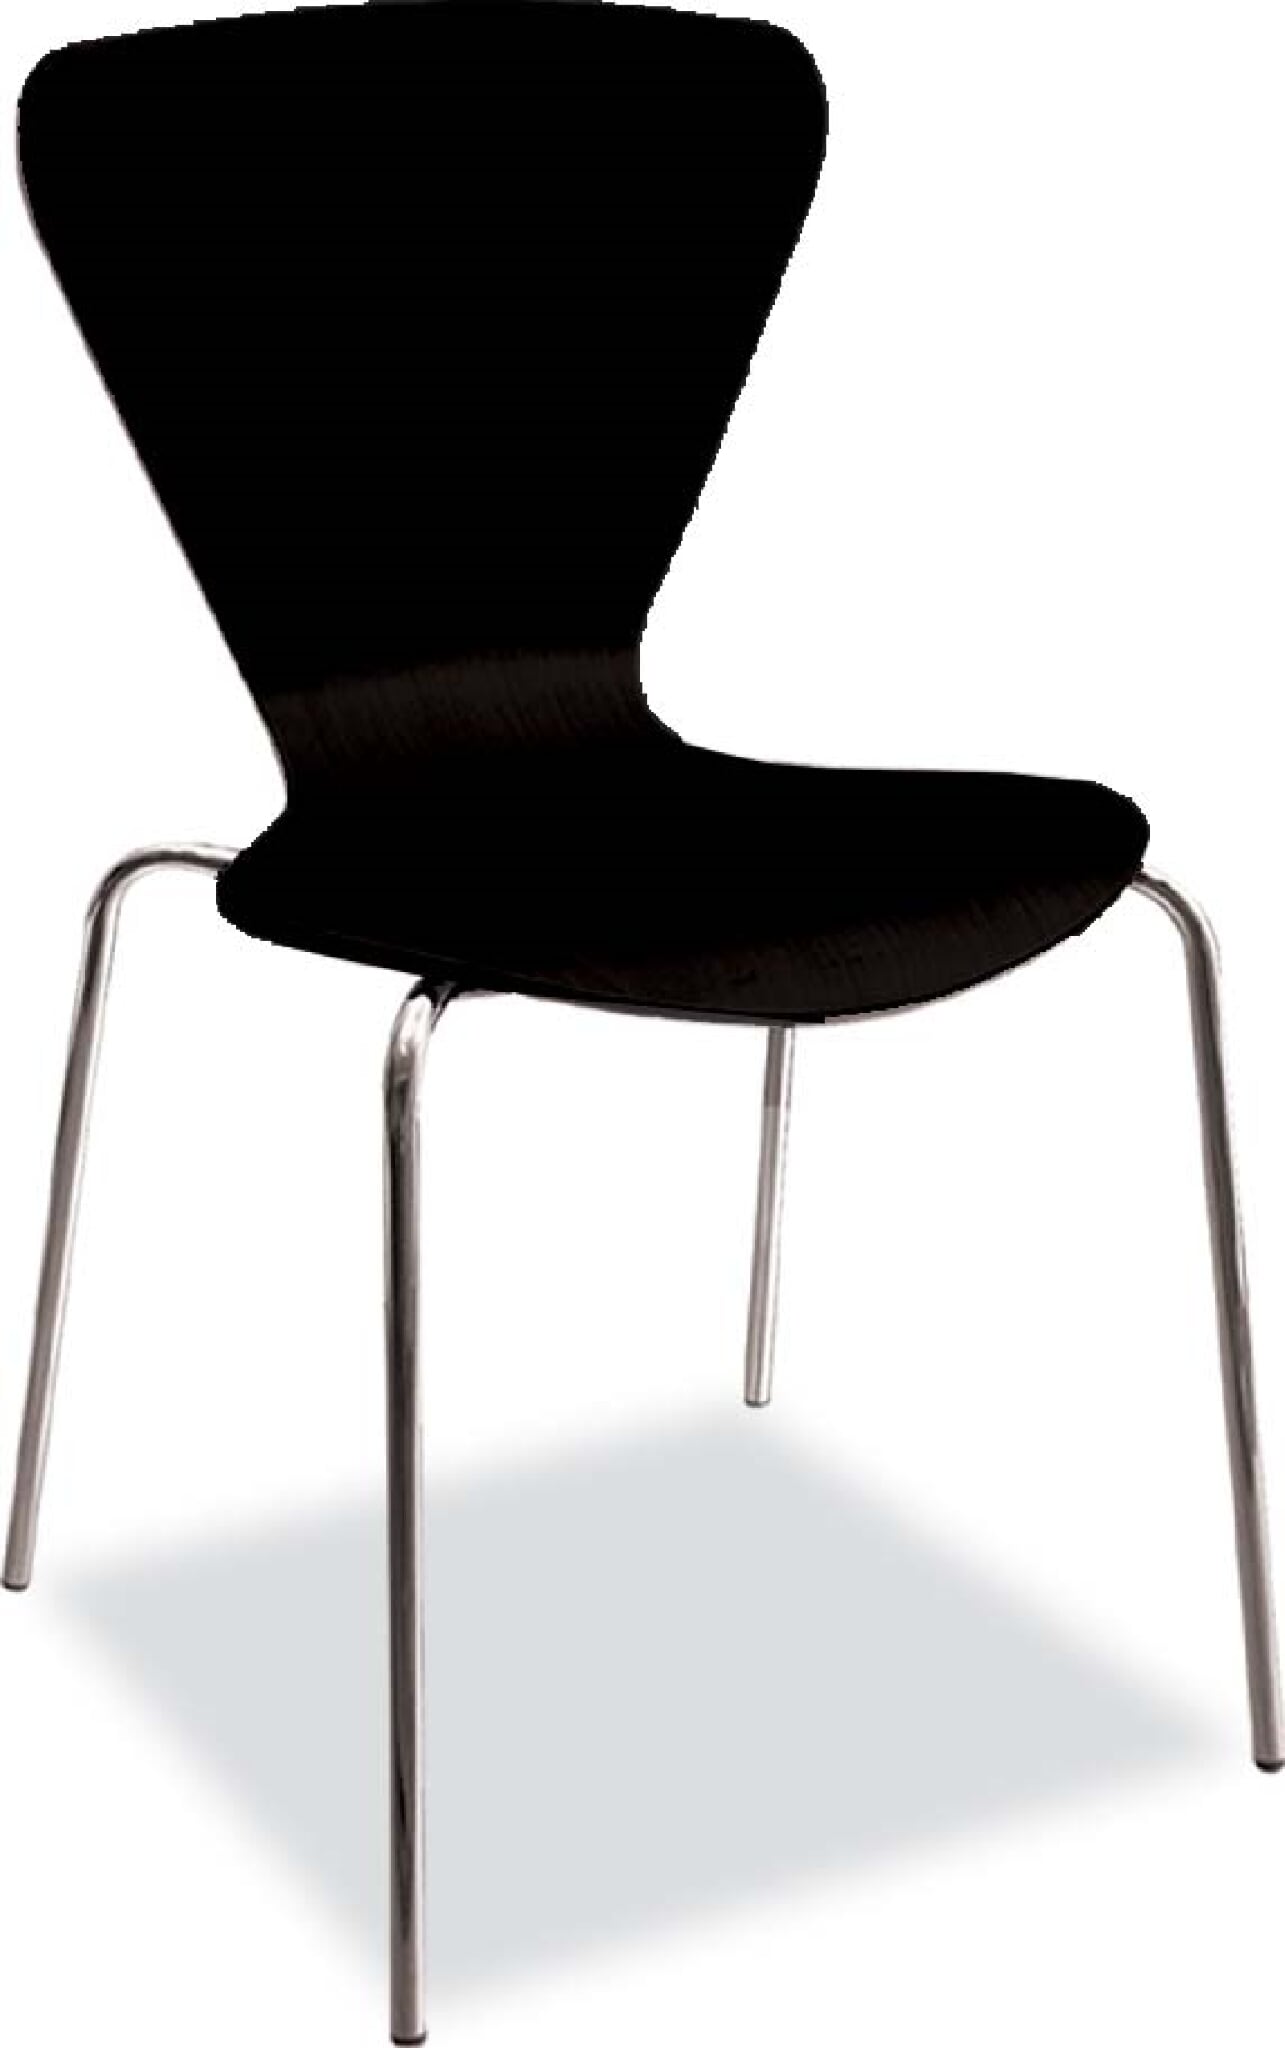 krzesło sklejkowe Ilona